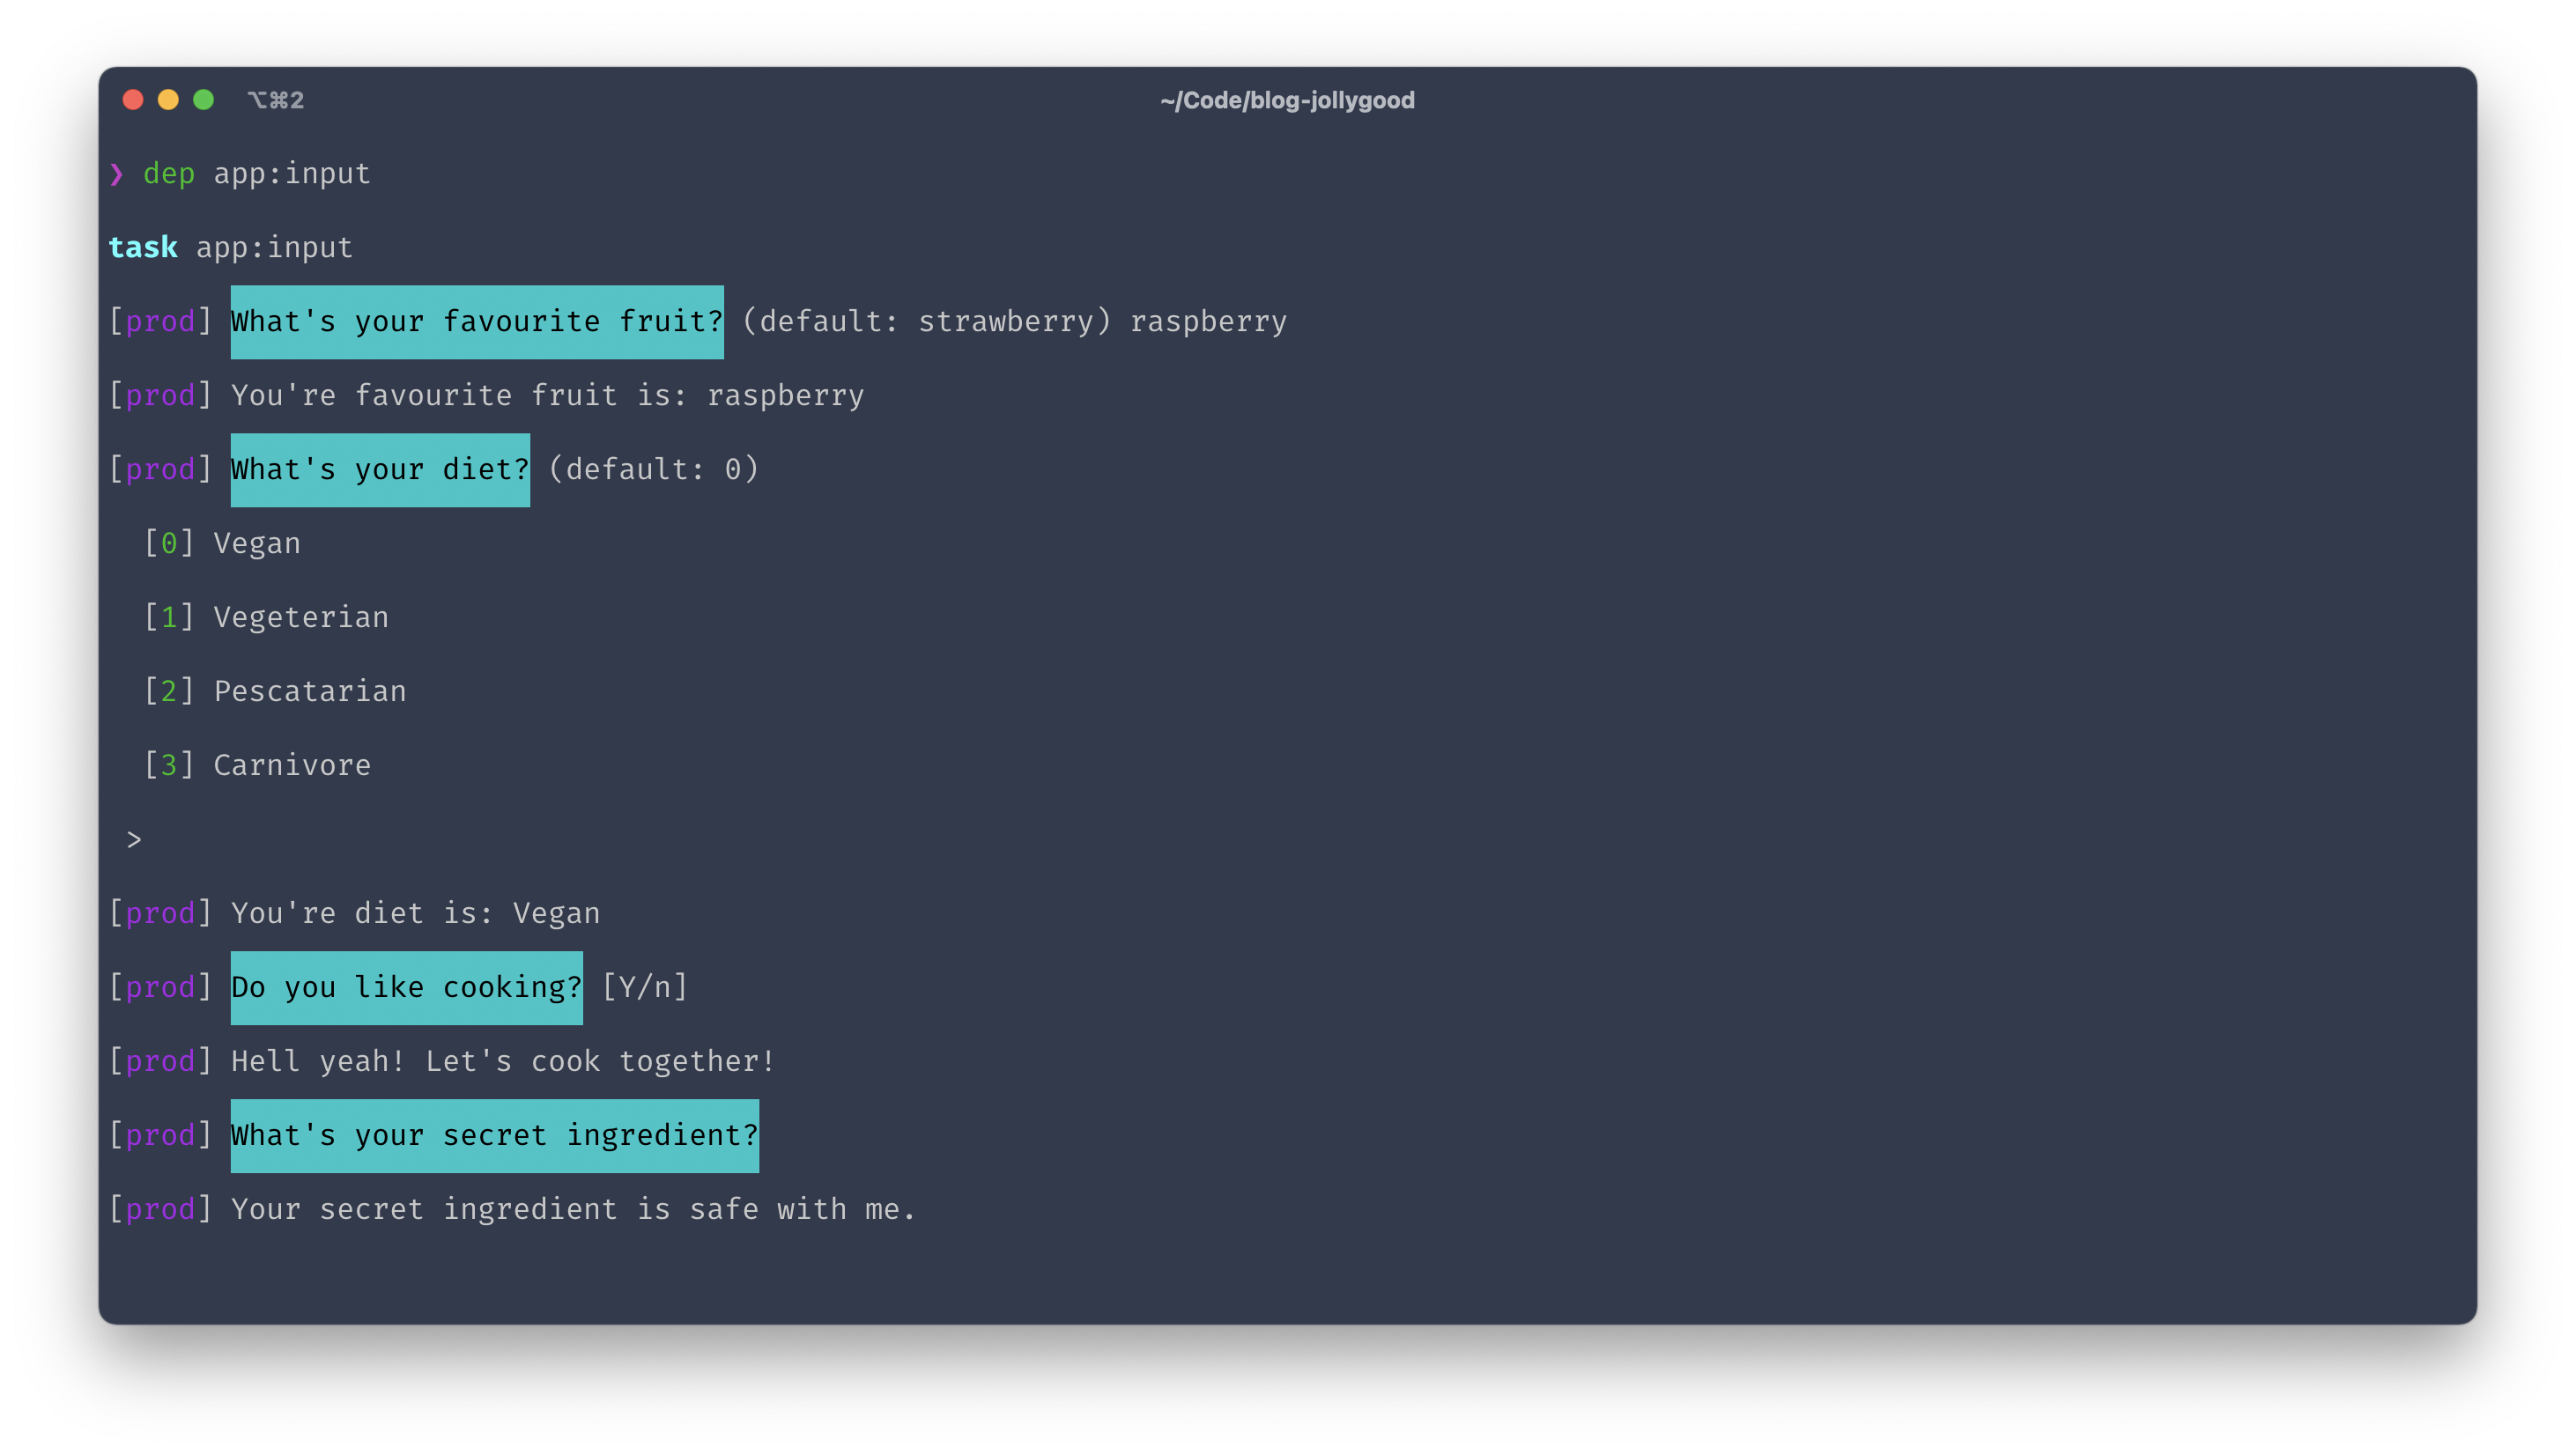 Screenshot of the terminal output of “app:input”.